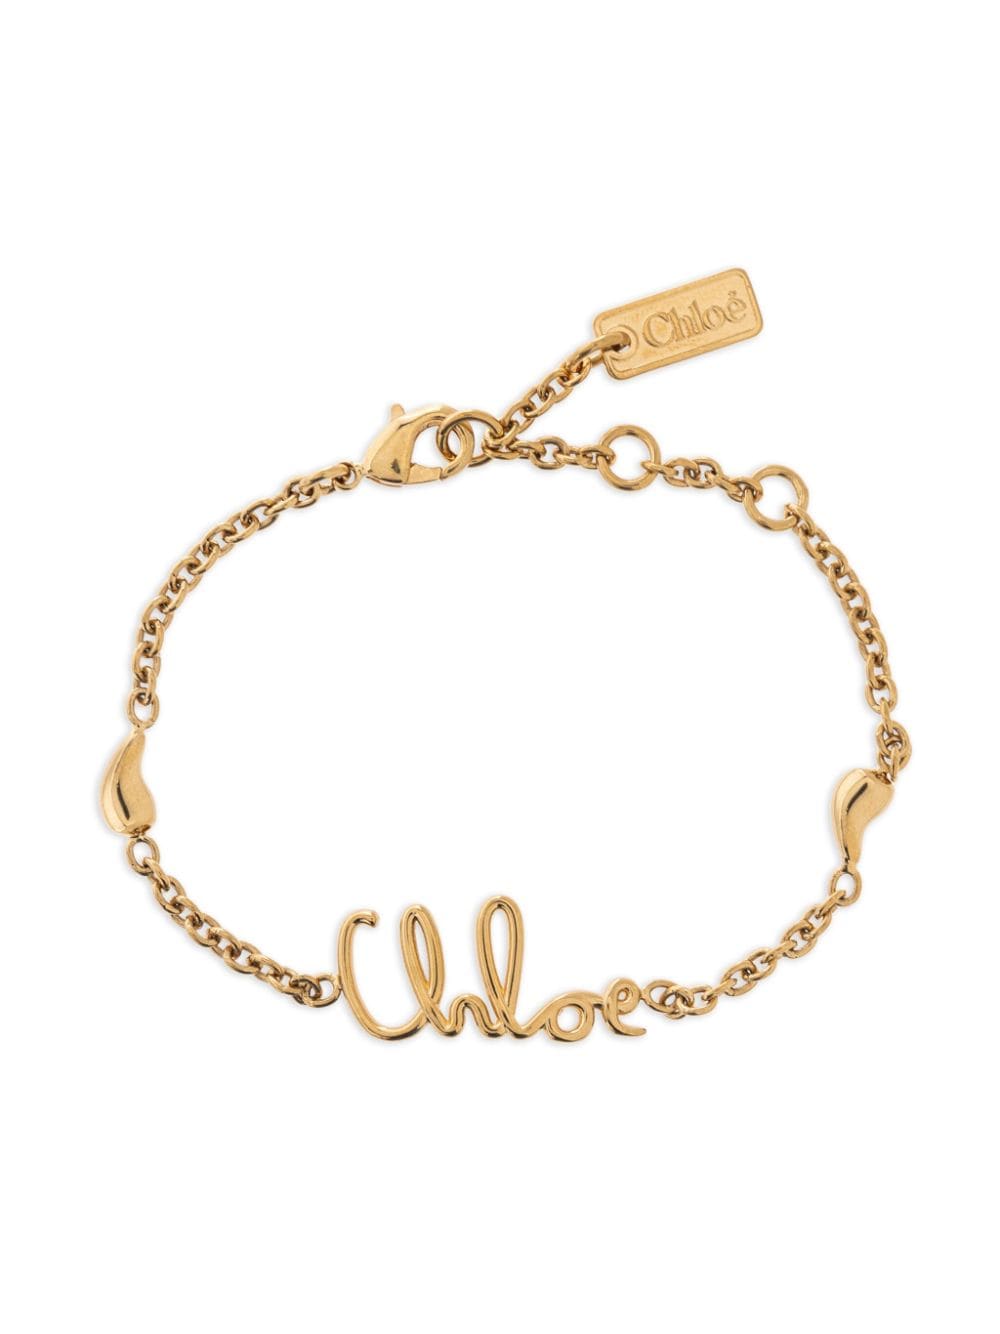 Chloé Chloé Iconic bracelet - Gold von Chloé